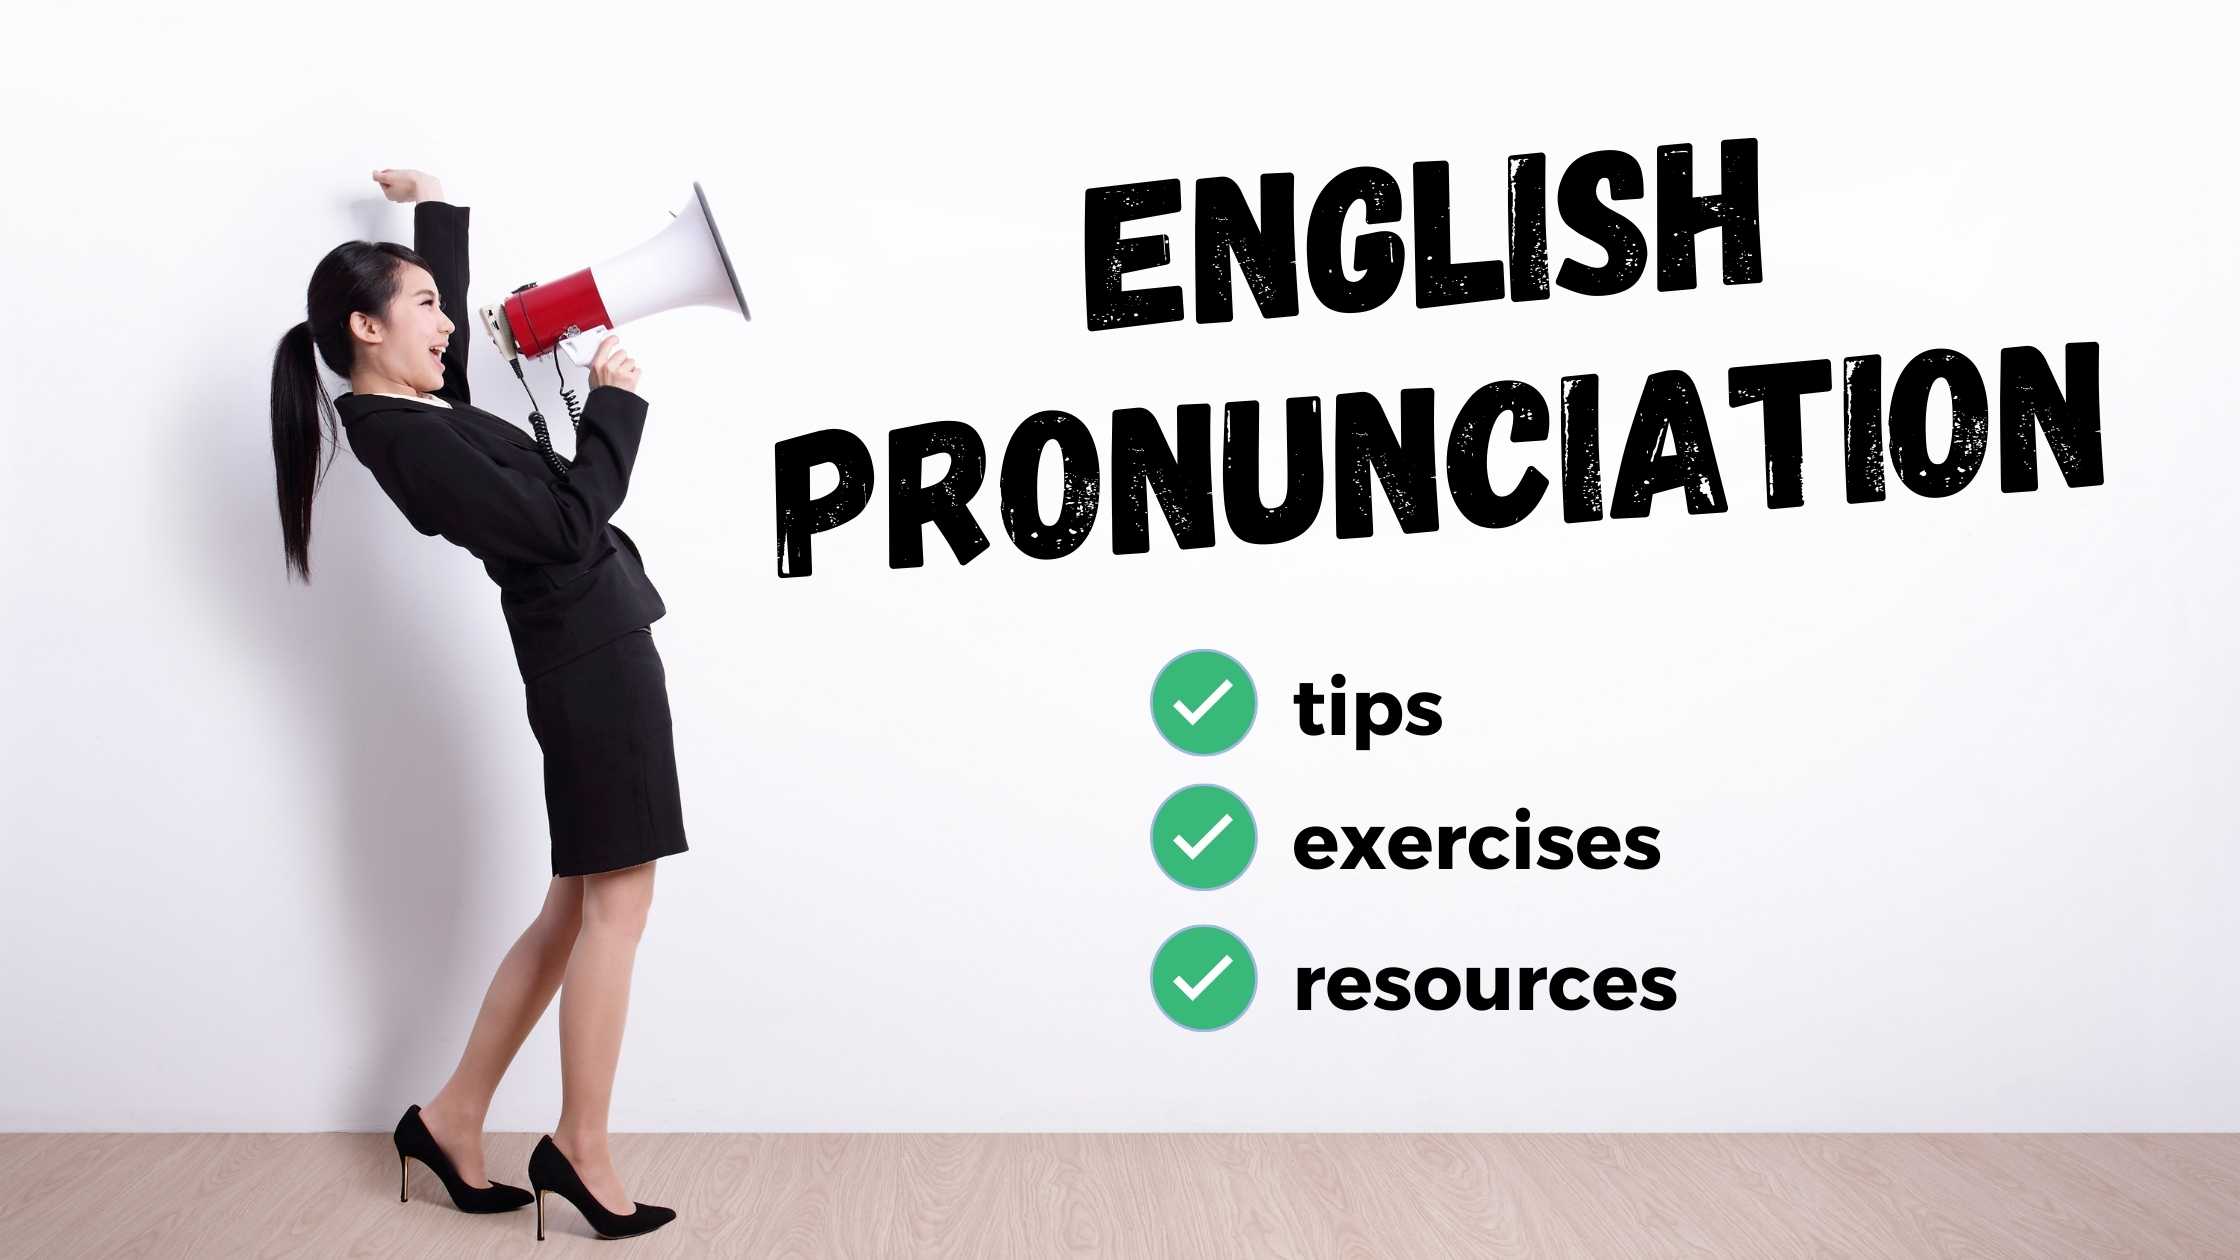 consejos de pronunciación en inglés, recursos, ejercicios, sonidos y letras en inglés